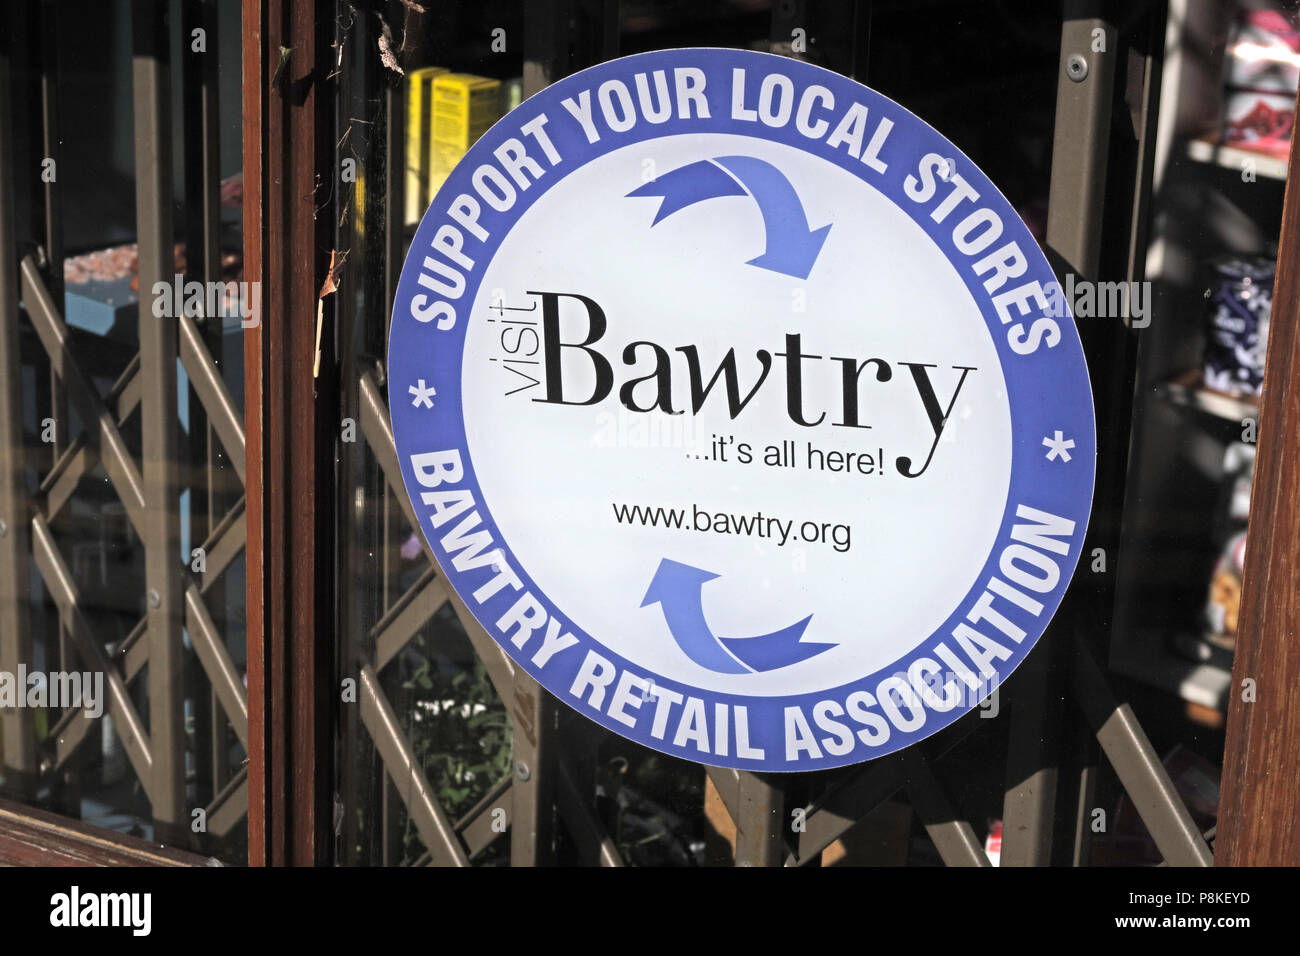 Bawtry association de détail, soutenir vos magasins locaux, Doncaster, South Yorkshire, Angleterre, Royaume-Uni Banque D'Images